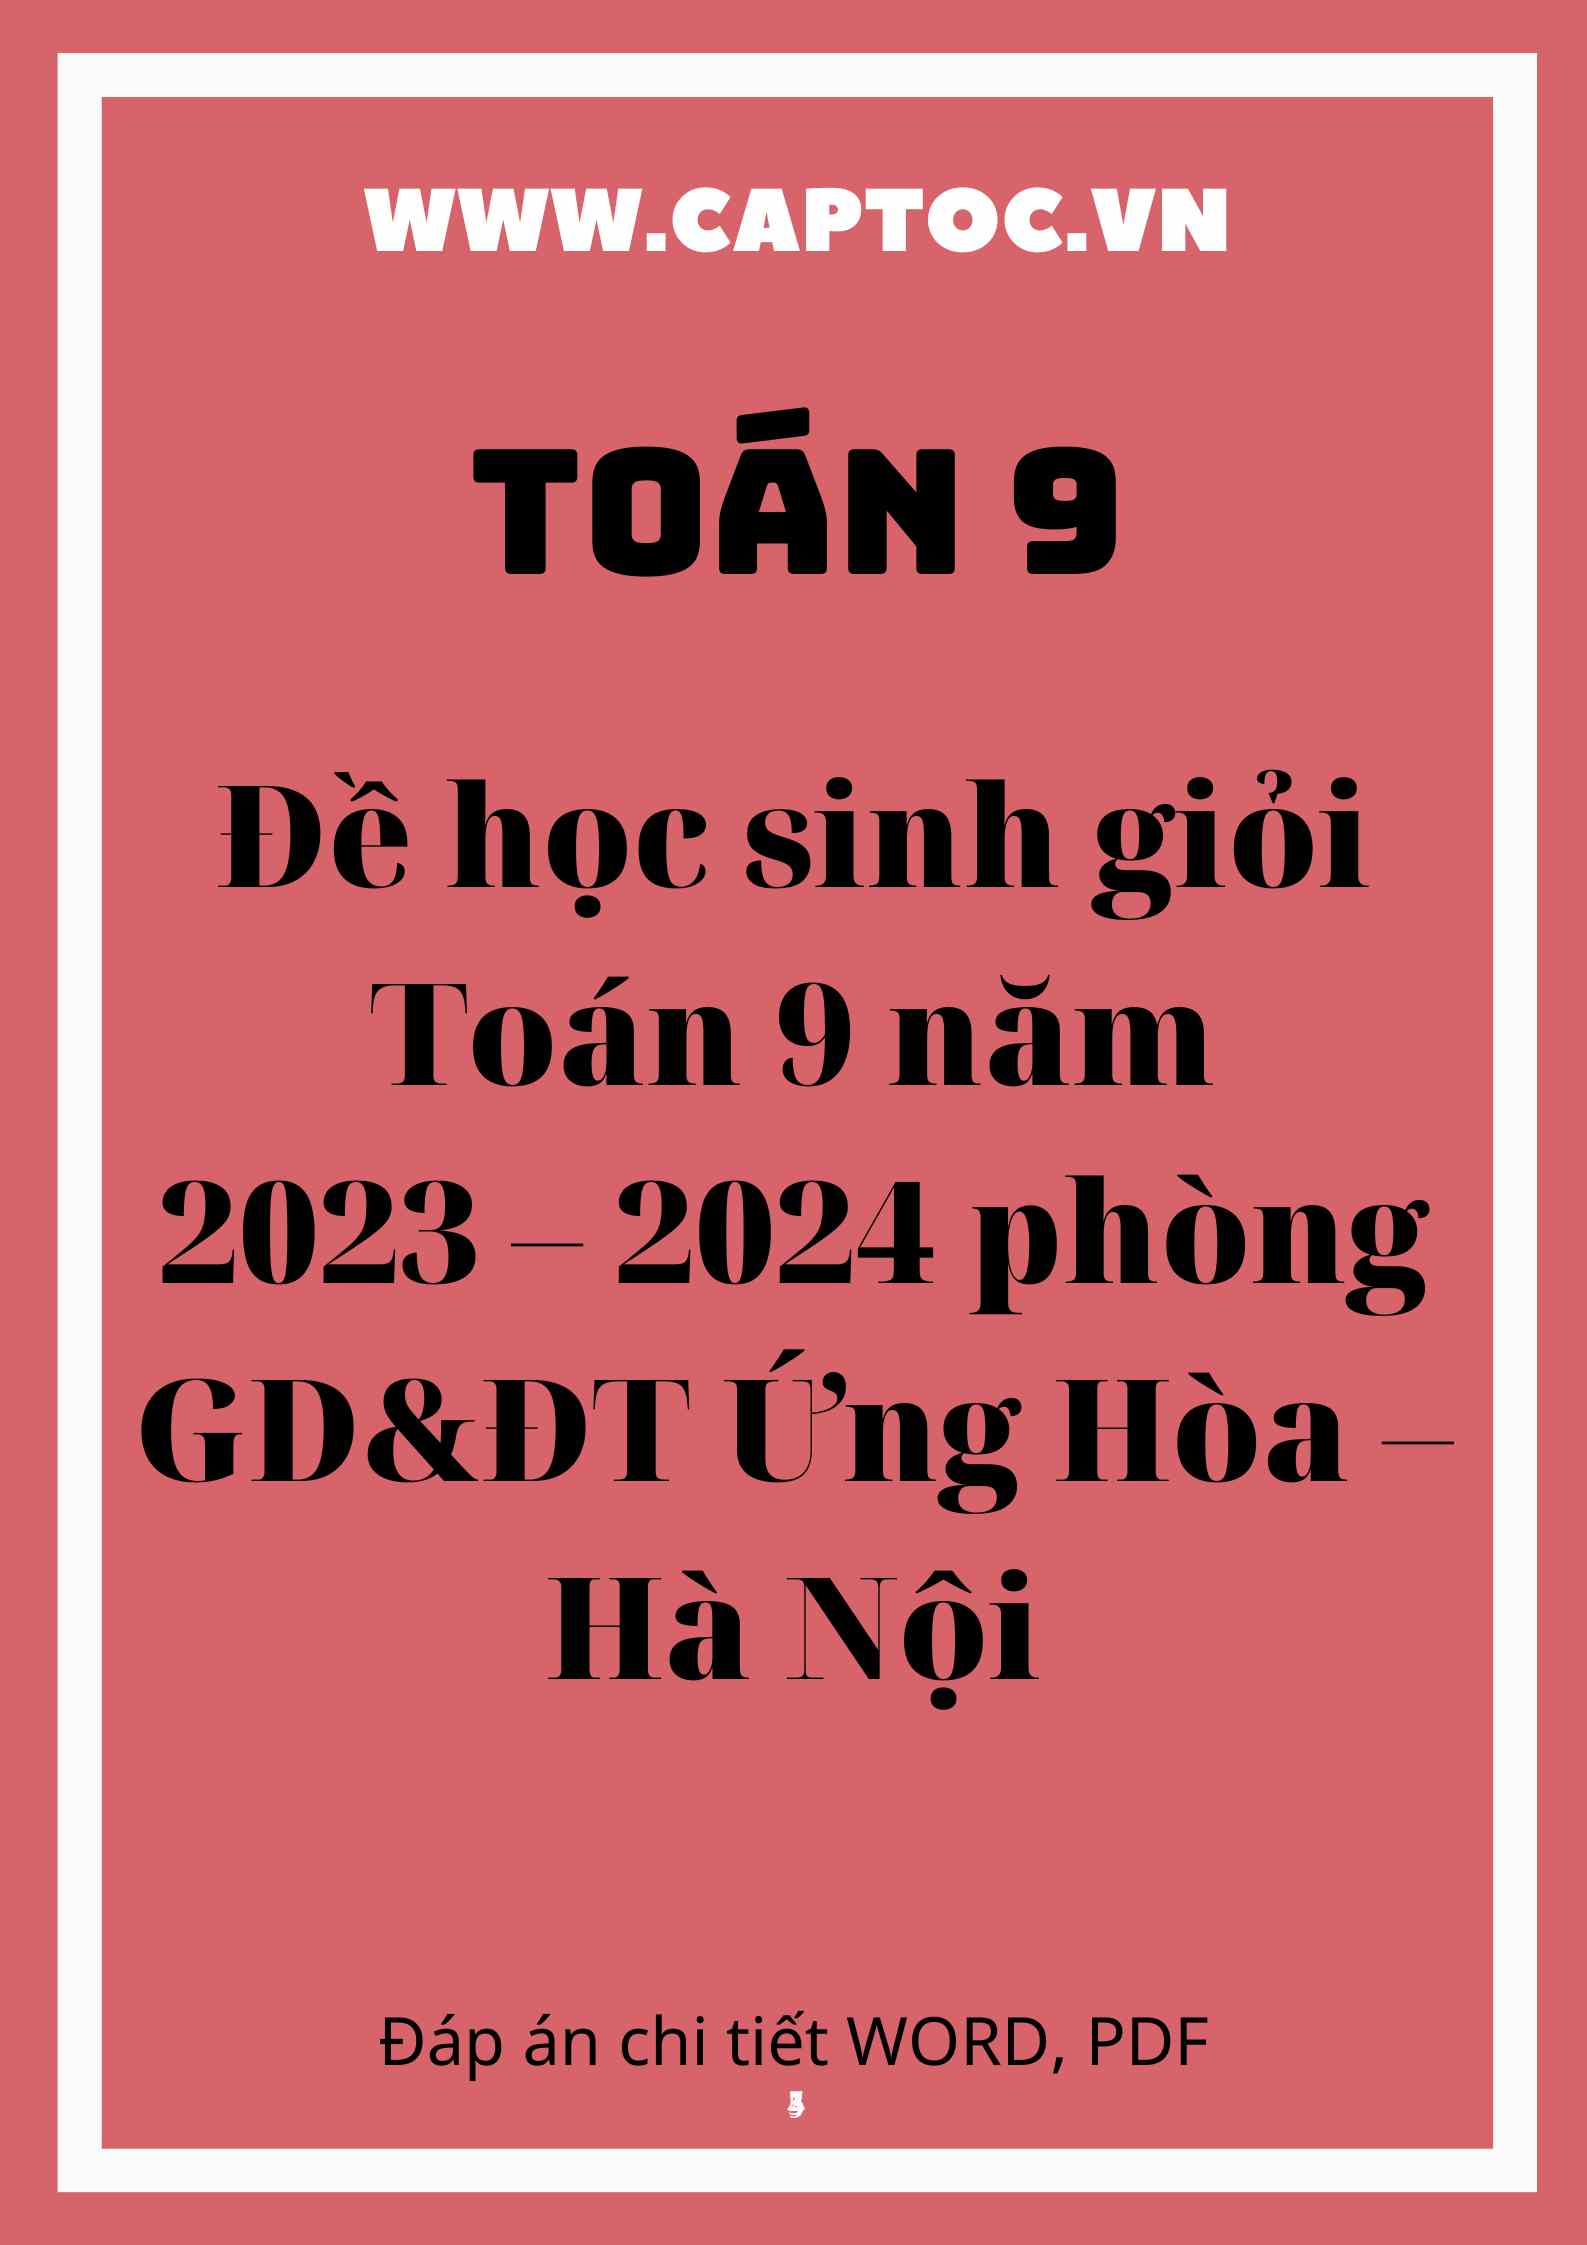 Đề học sinh giỏi Toán 9 năm 2023 – 2024 phòng GD&ĐT Ứng Hòa – Hà Nội